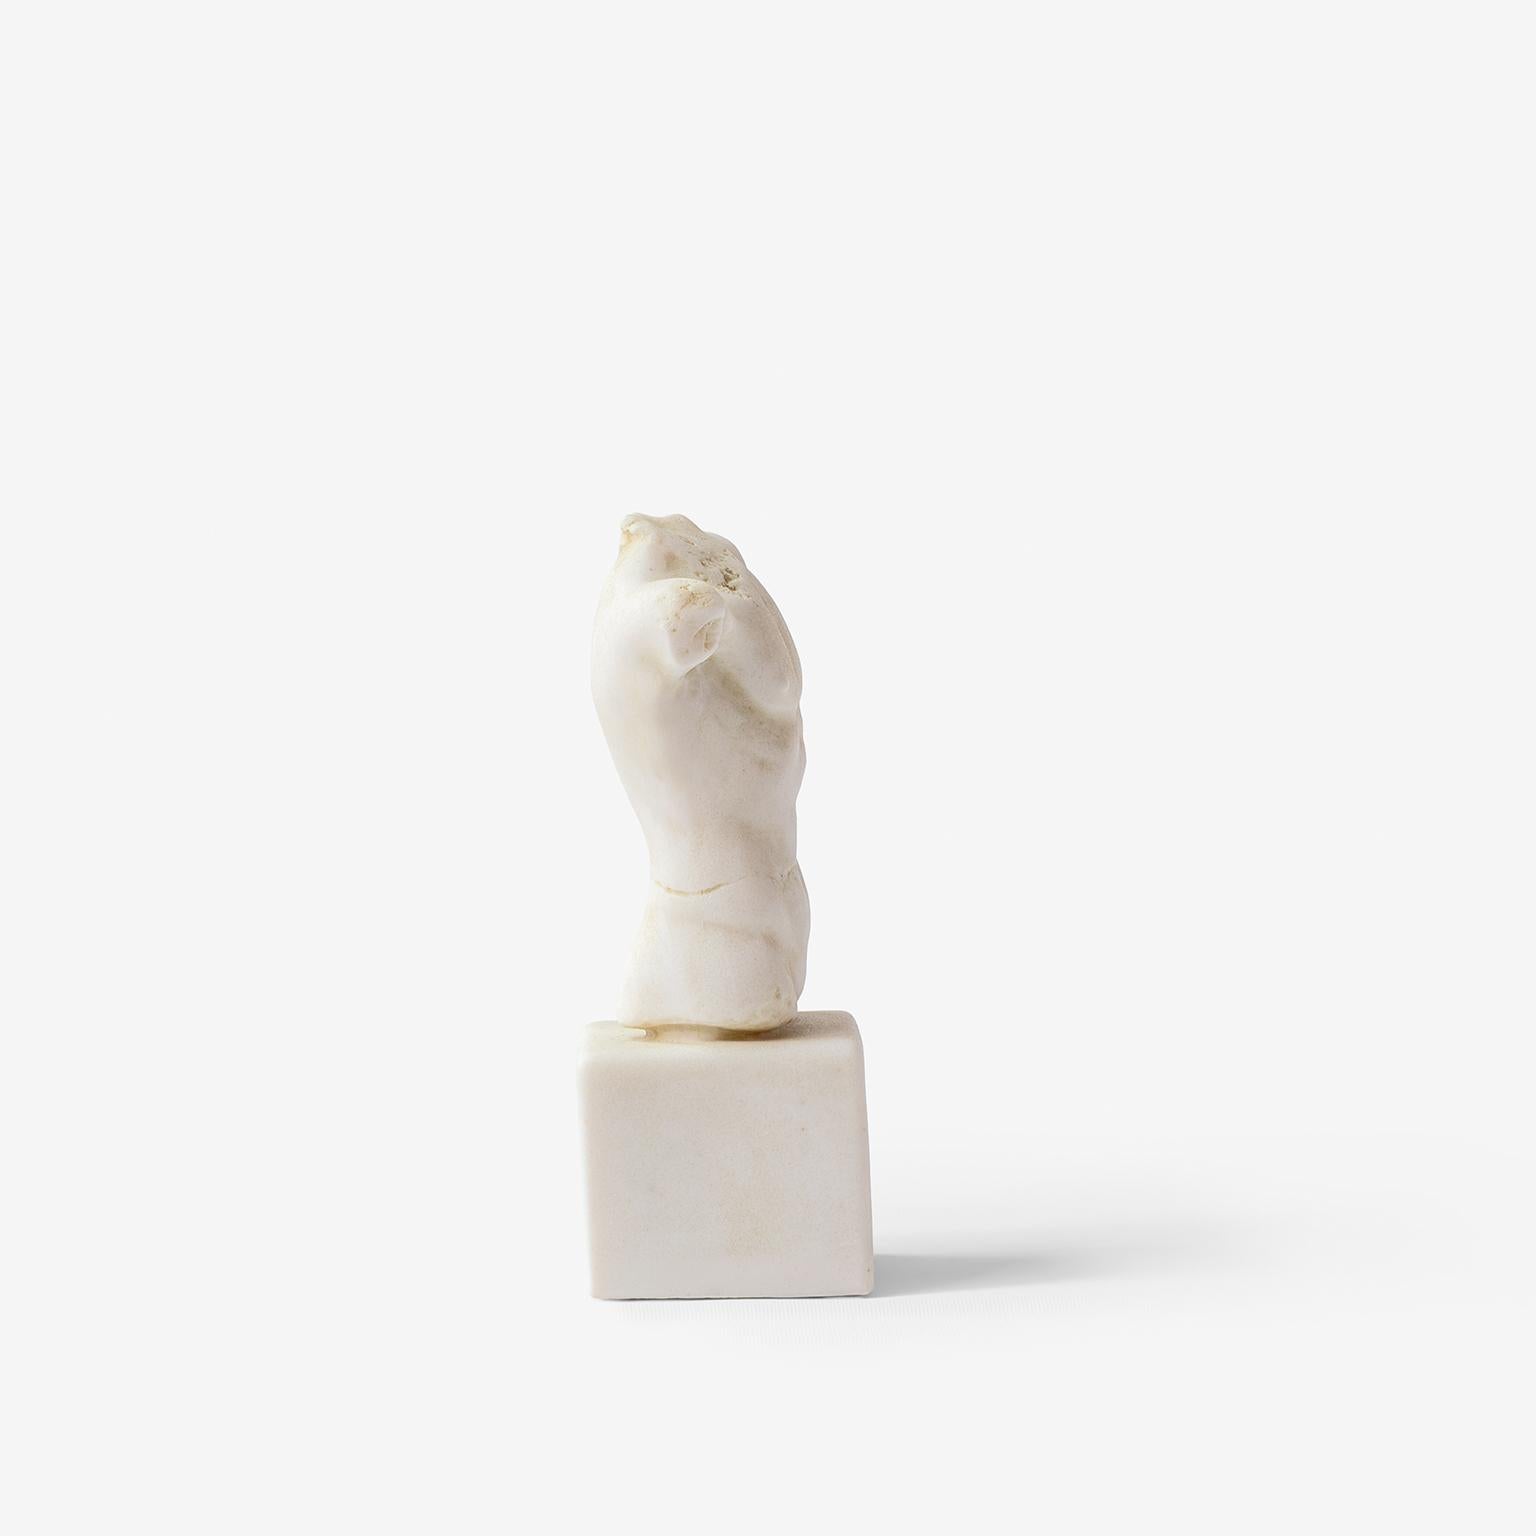 Hauteur : 5.9'' / Poids : 800 gr

Il s'agit d'une œuvre qui symbolise la représentation de la forme masculine idéale.

-Produit à partir de poudre de marbre pressée.
-Produit à partir des moules originaux des œuvres du musée.
-Canal à utiliser